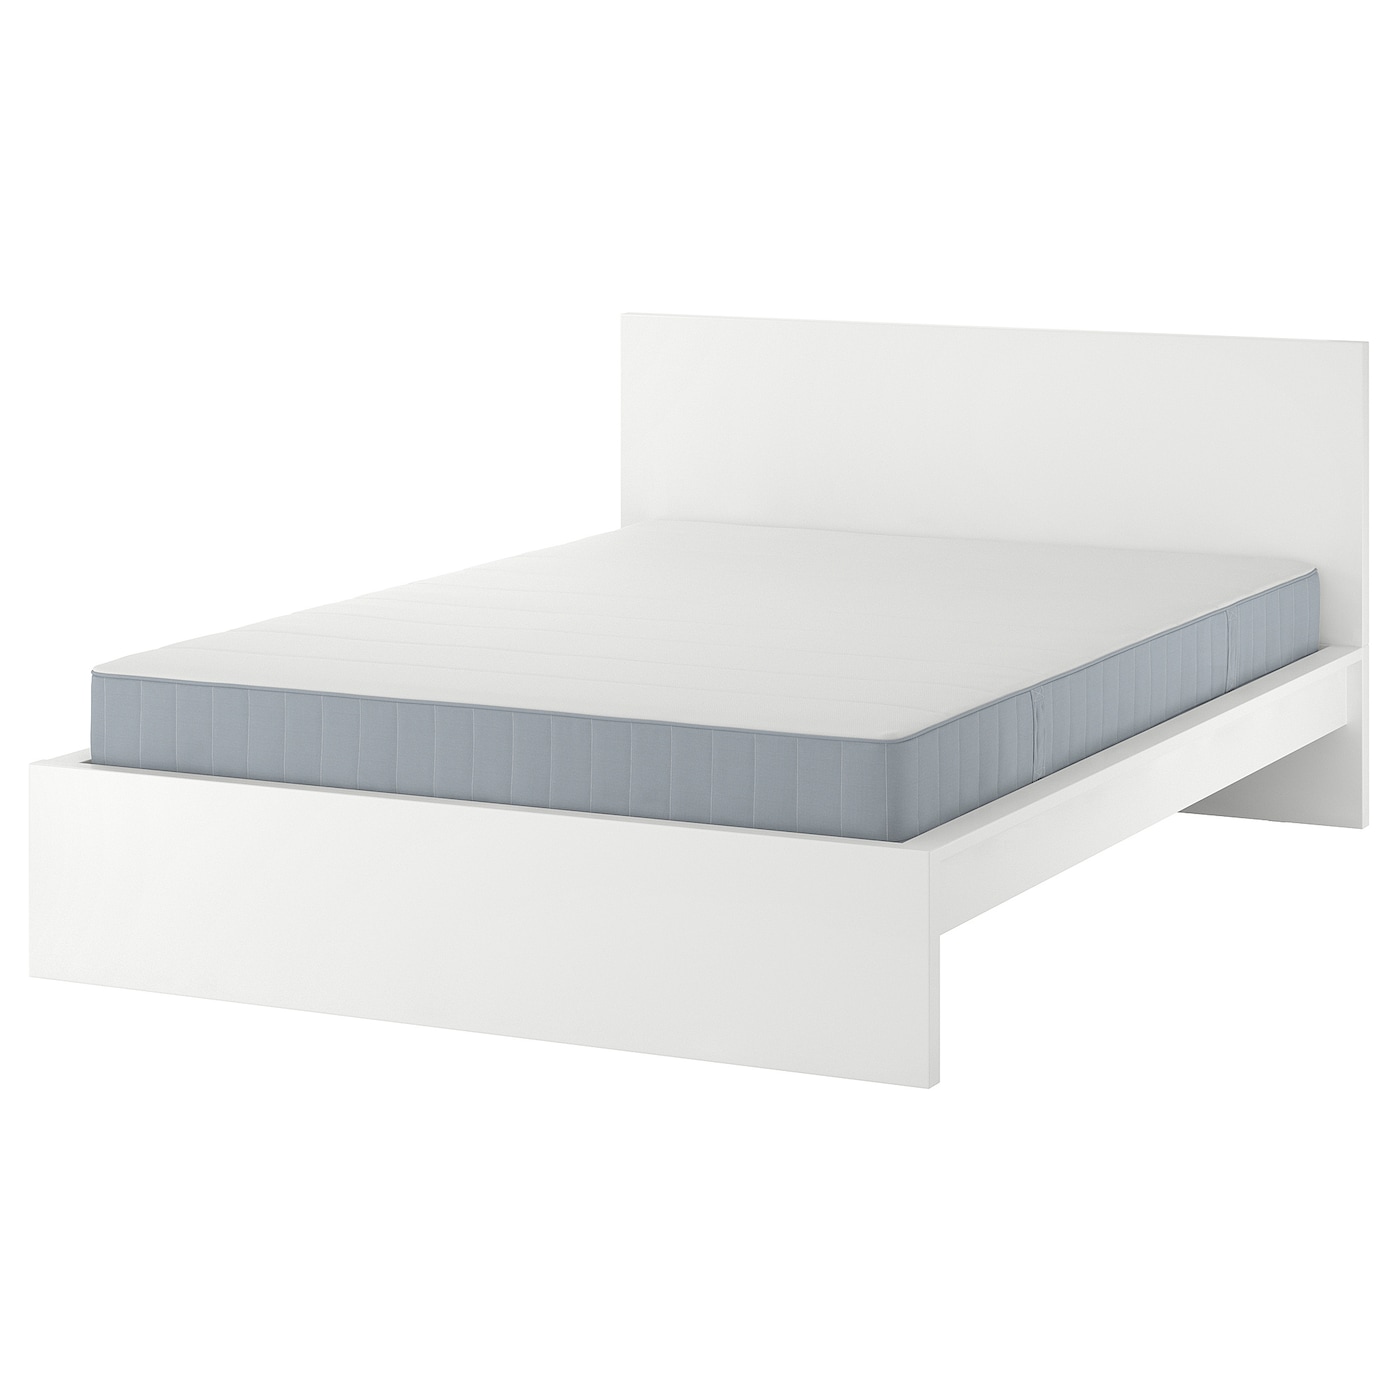 Кровать - IKEA MALM, 200х140 см, матрас жесткий, белый, МАЛЬМ ИКЕА